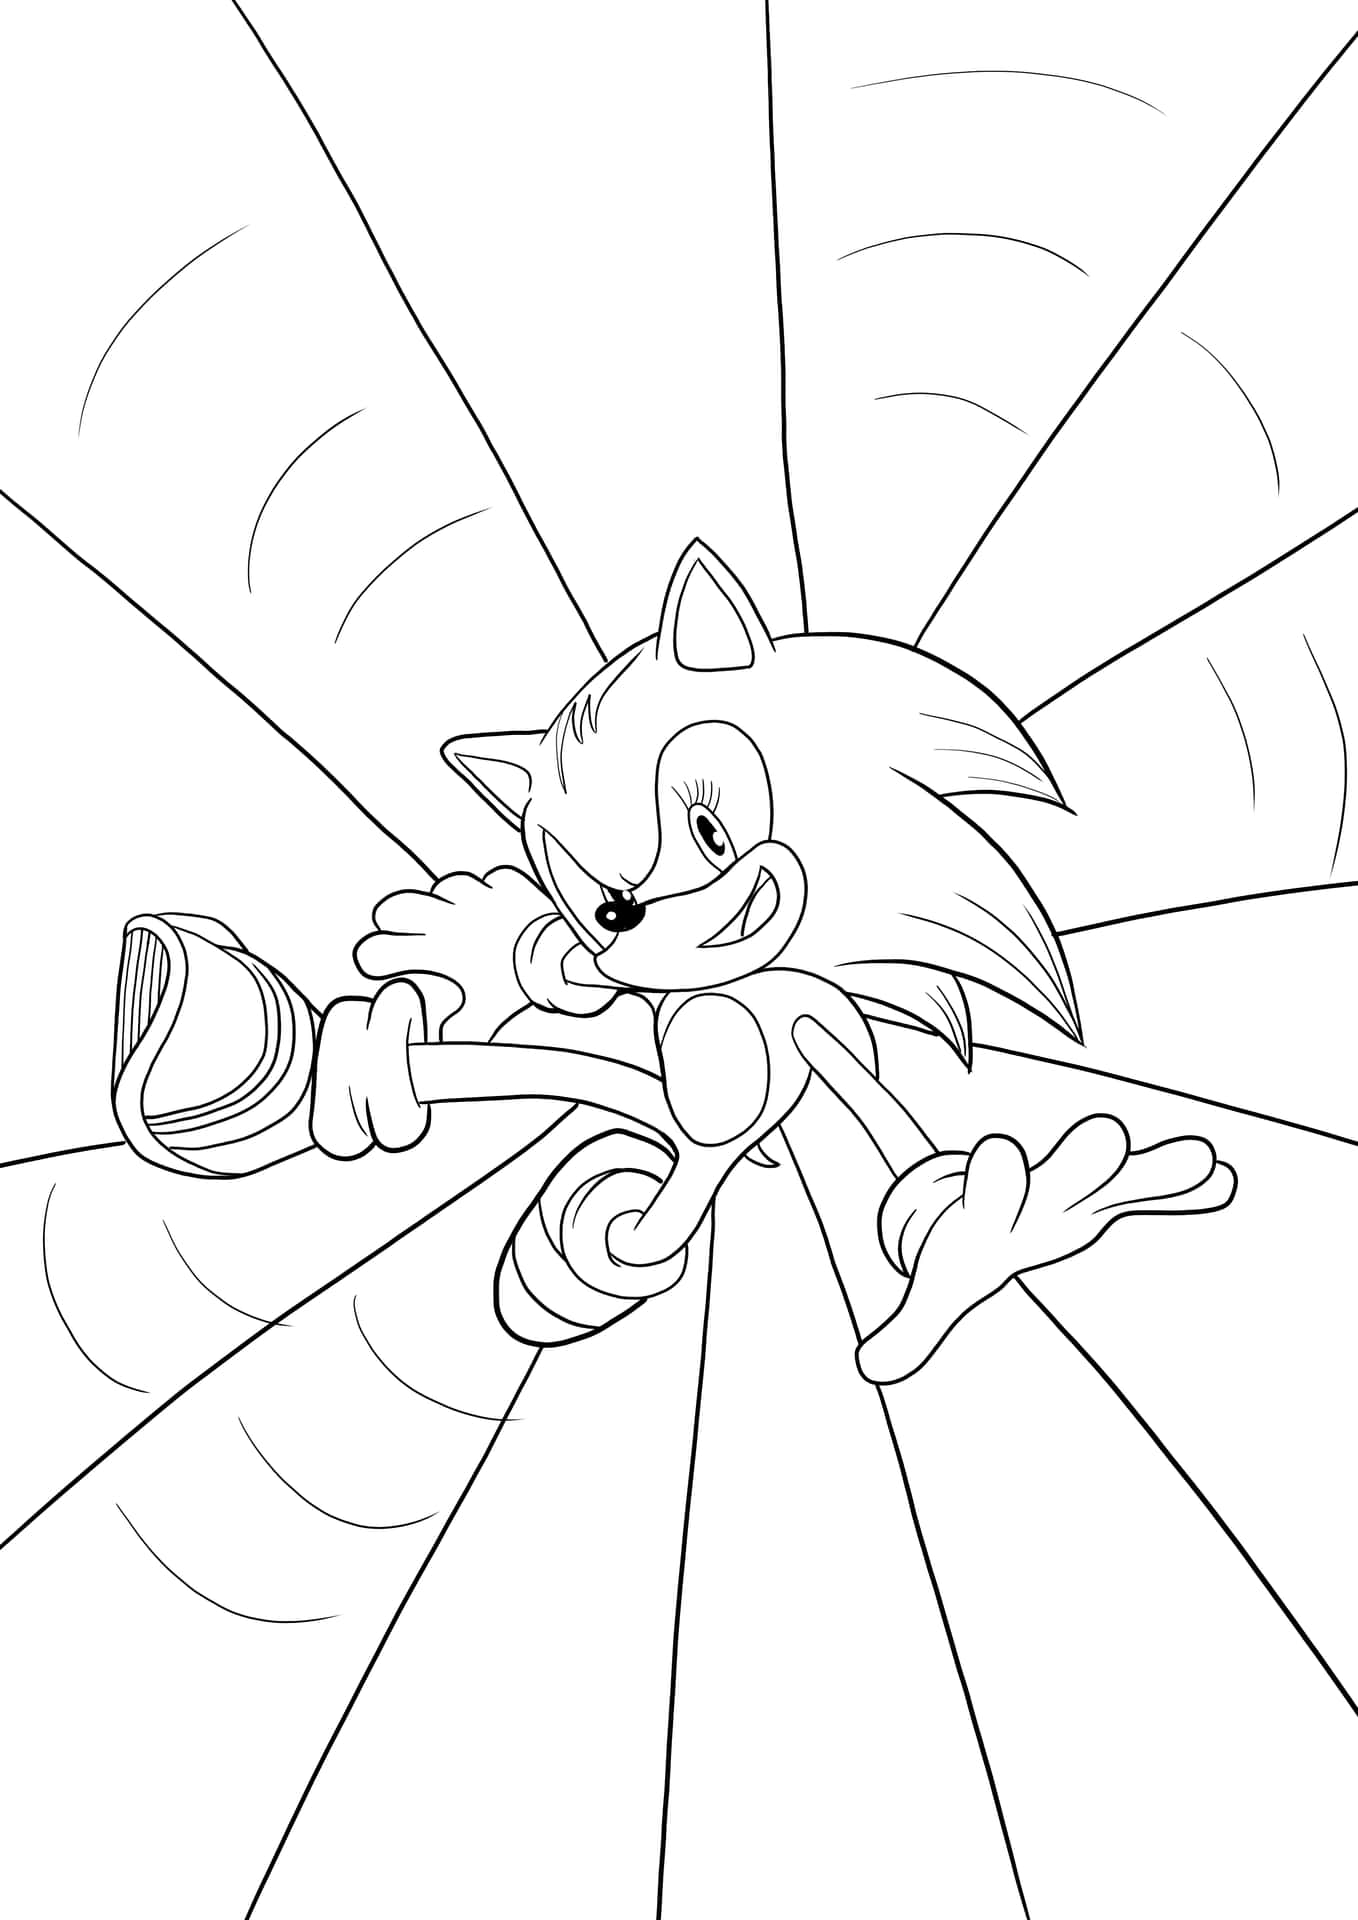 Imagende Sonic Para Colorear: Super Sonic Preparado Para Dar Una Patada.